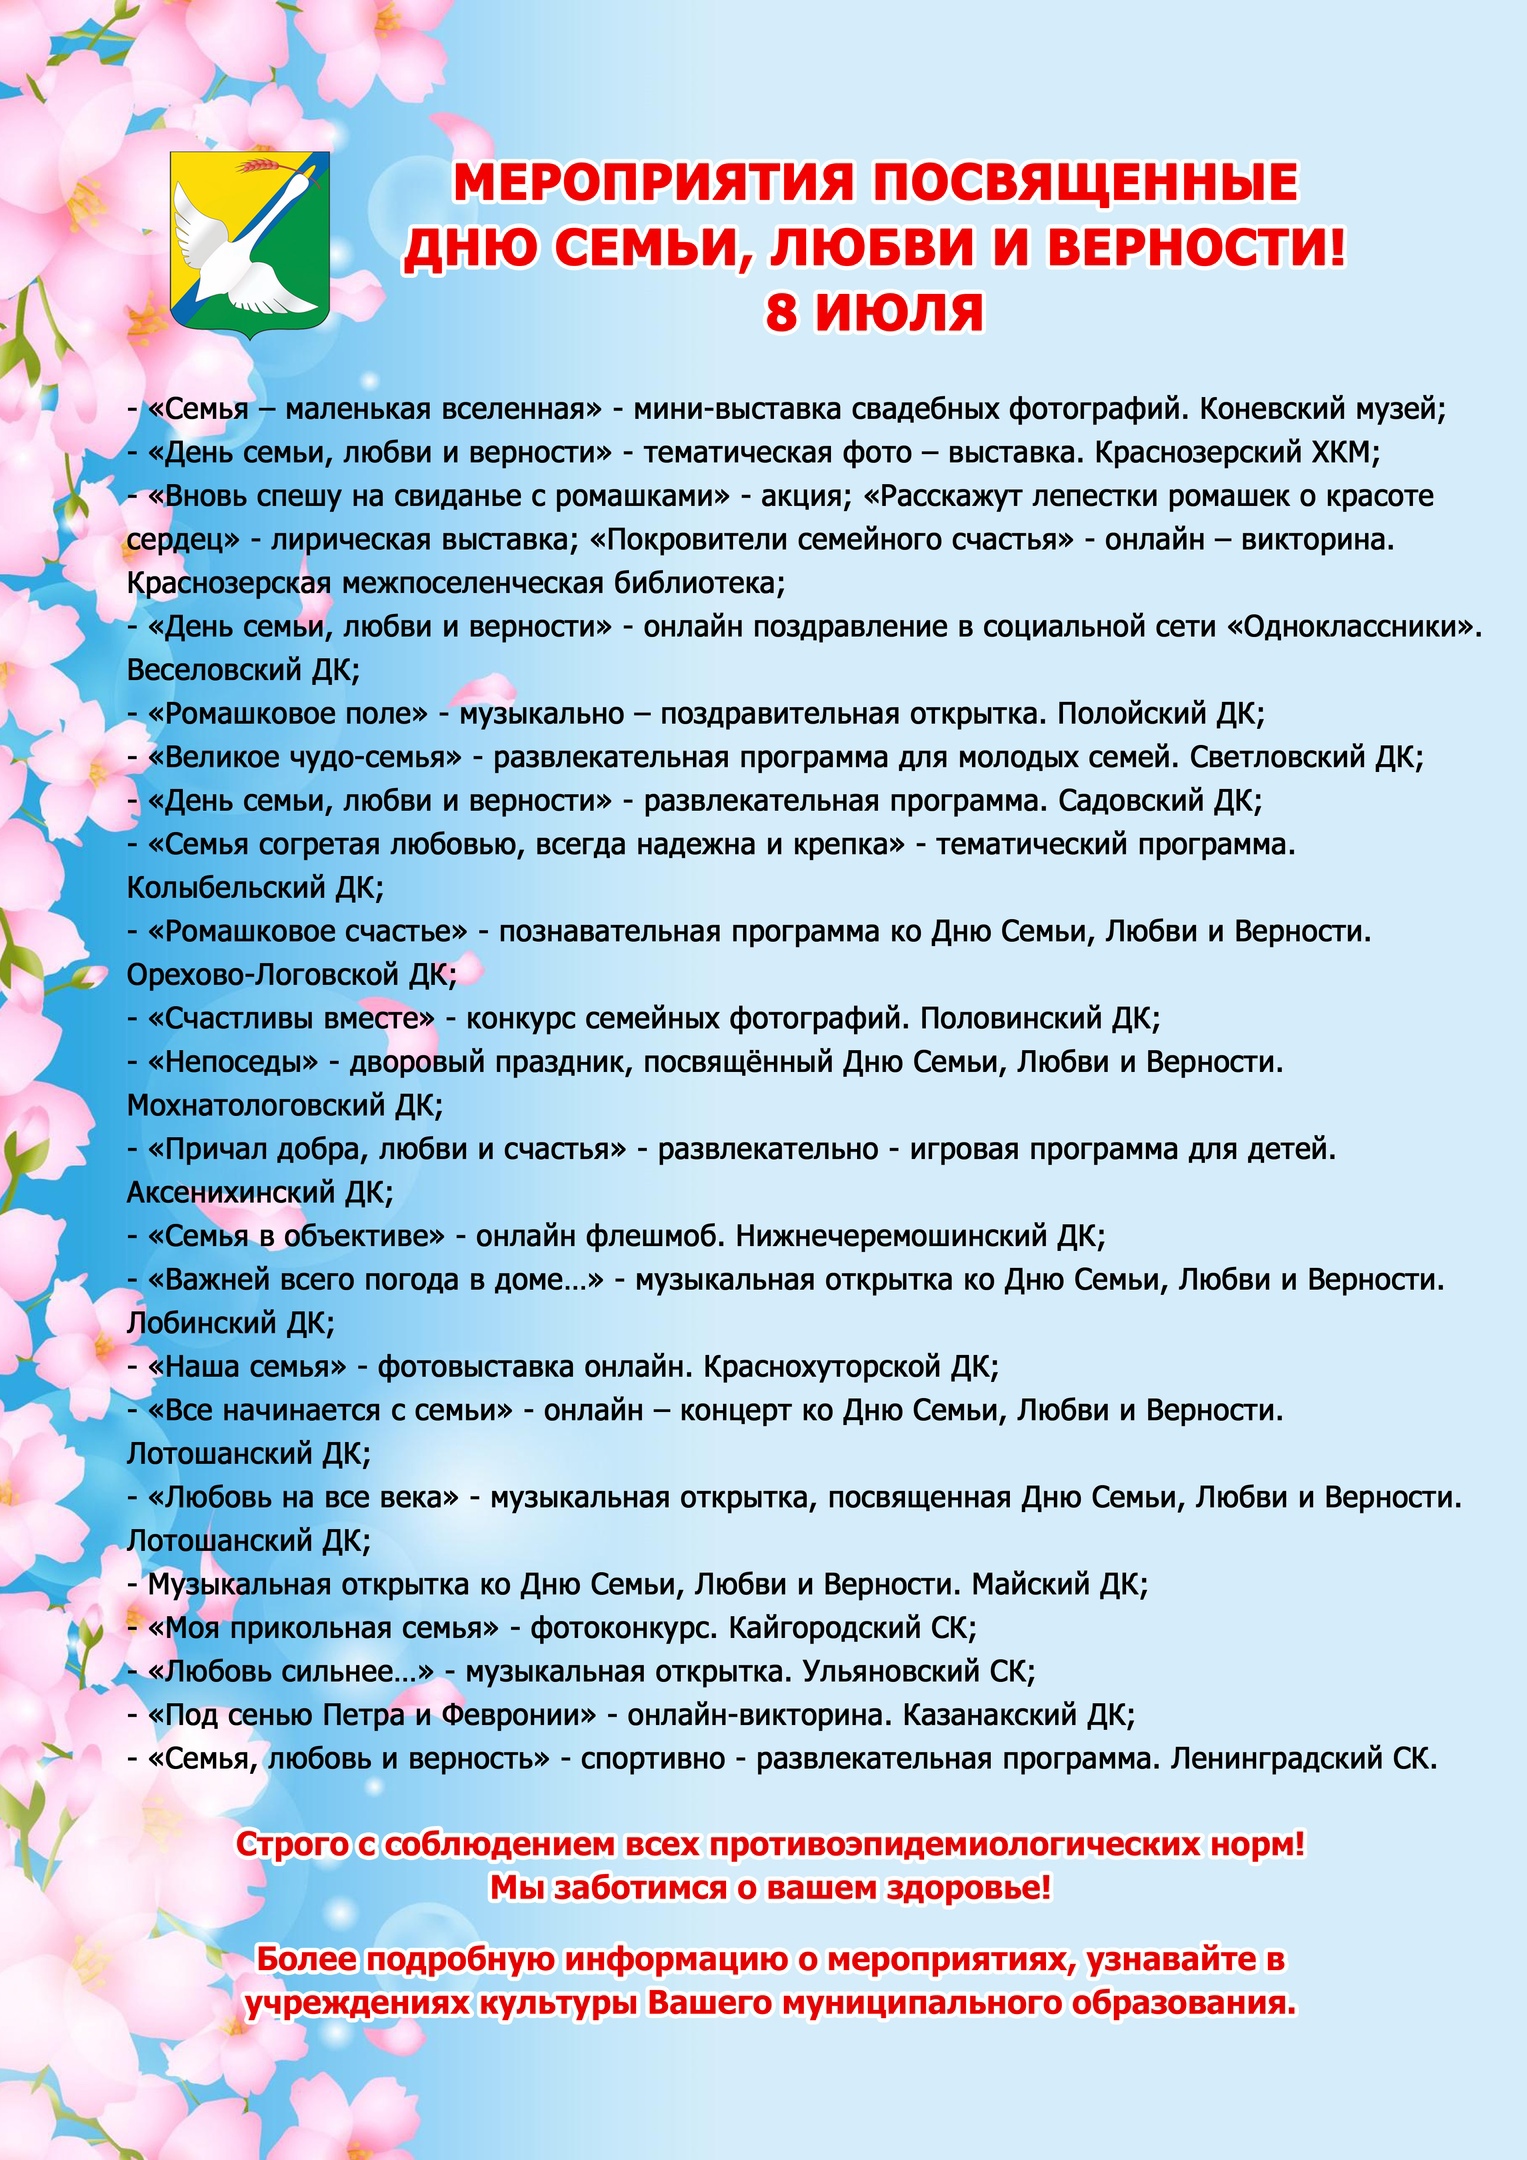 Мероприятия 8 июля в Краснозерском районе